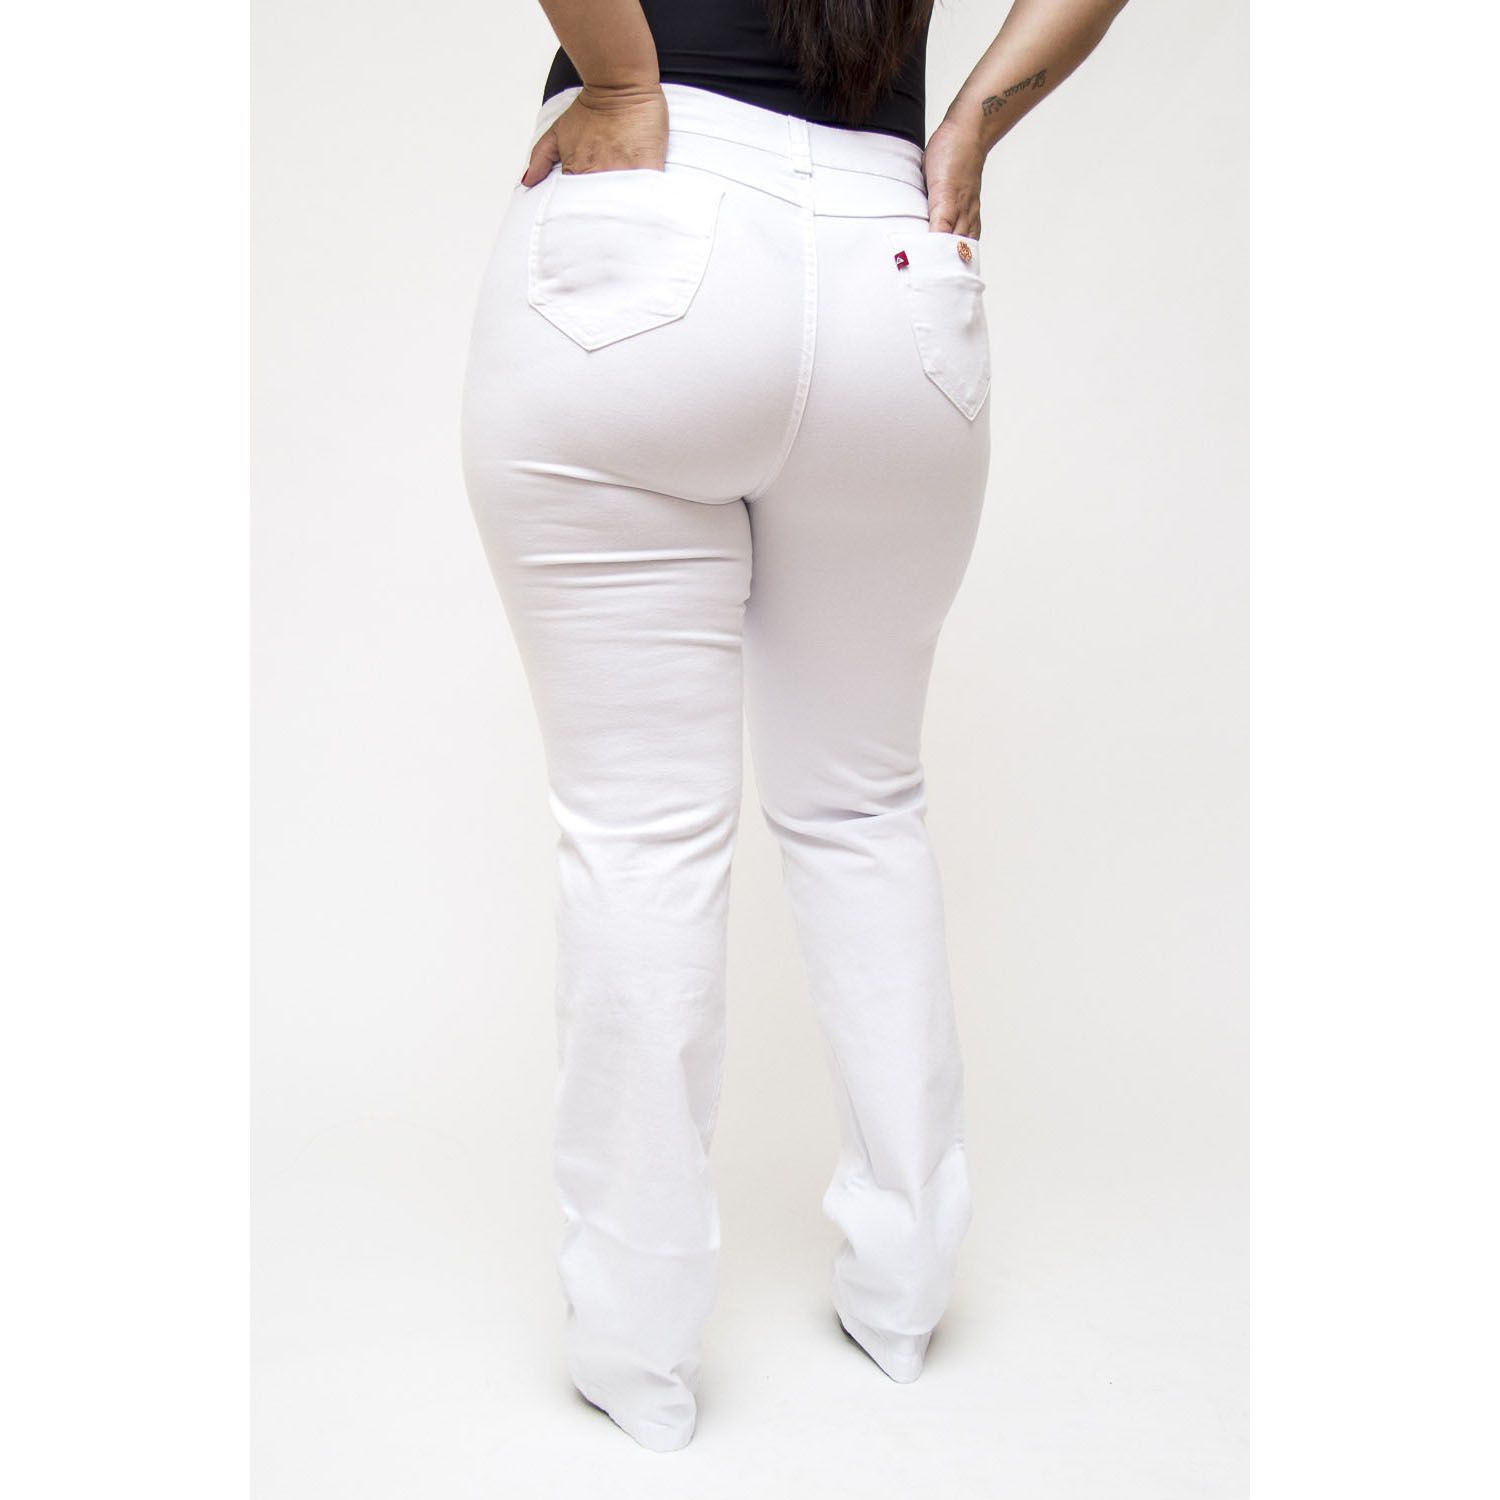 Calça Branca Capri Plus Size Jeans Feminina Cintura Alta Lycra